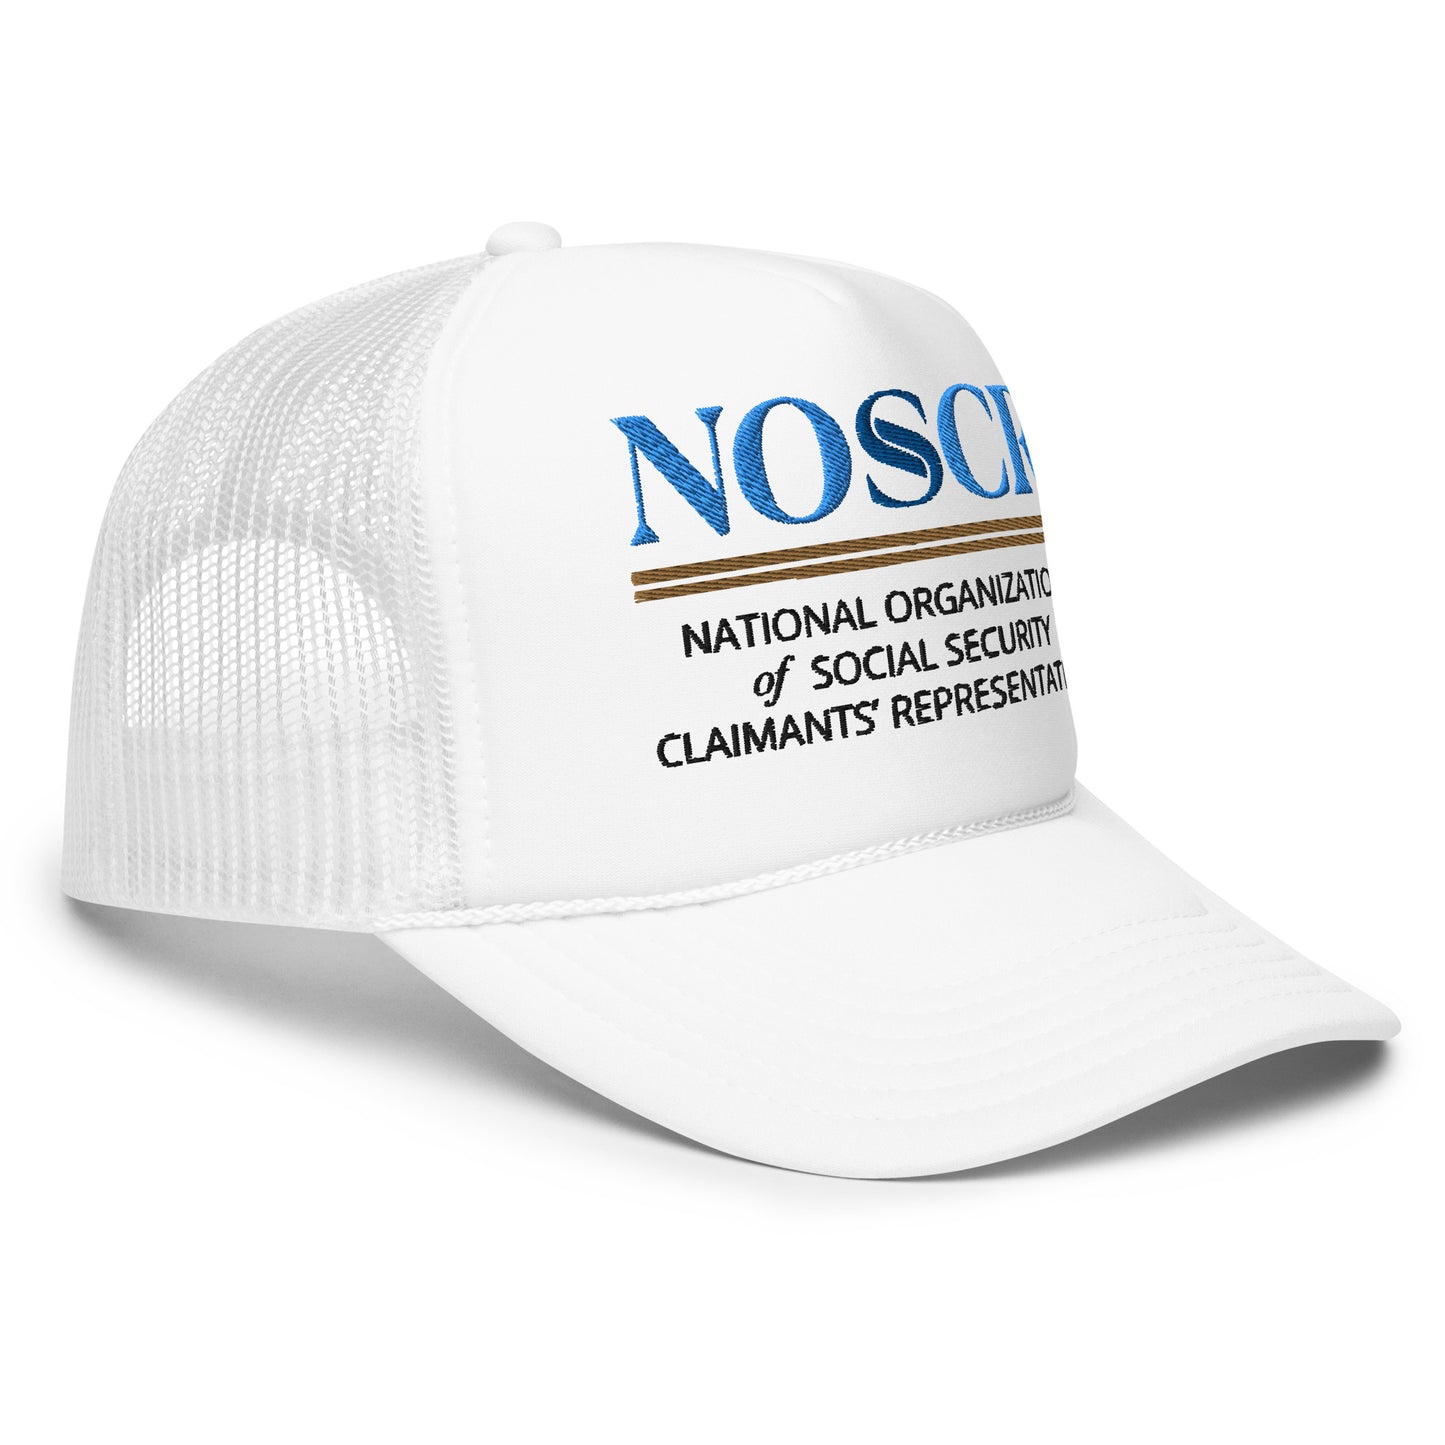 NOSSCR Foam trucker hat